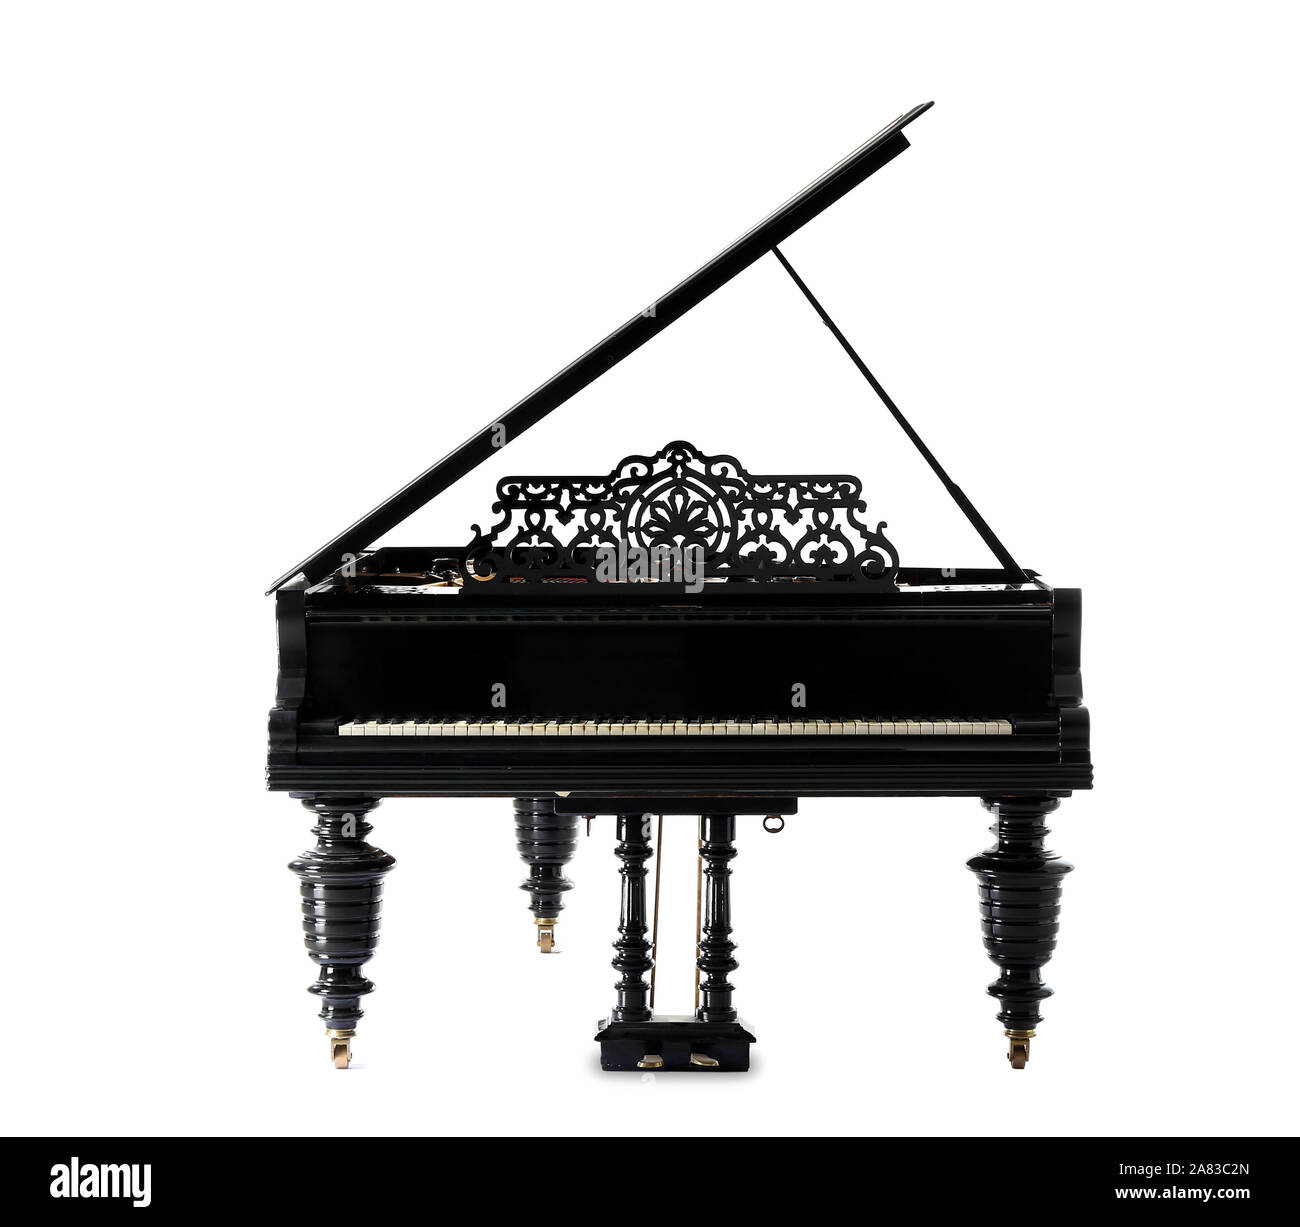 Classic piano Banque d'images détourées - Page 3 - Alamy